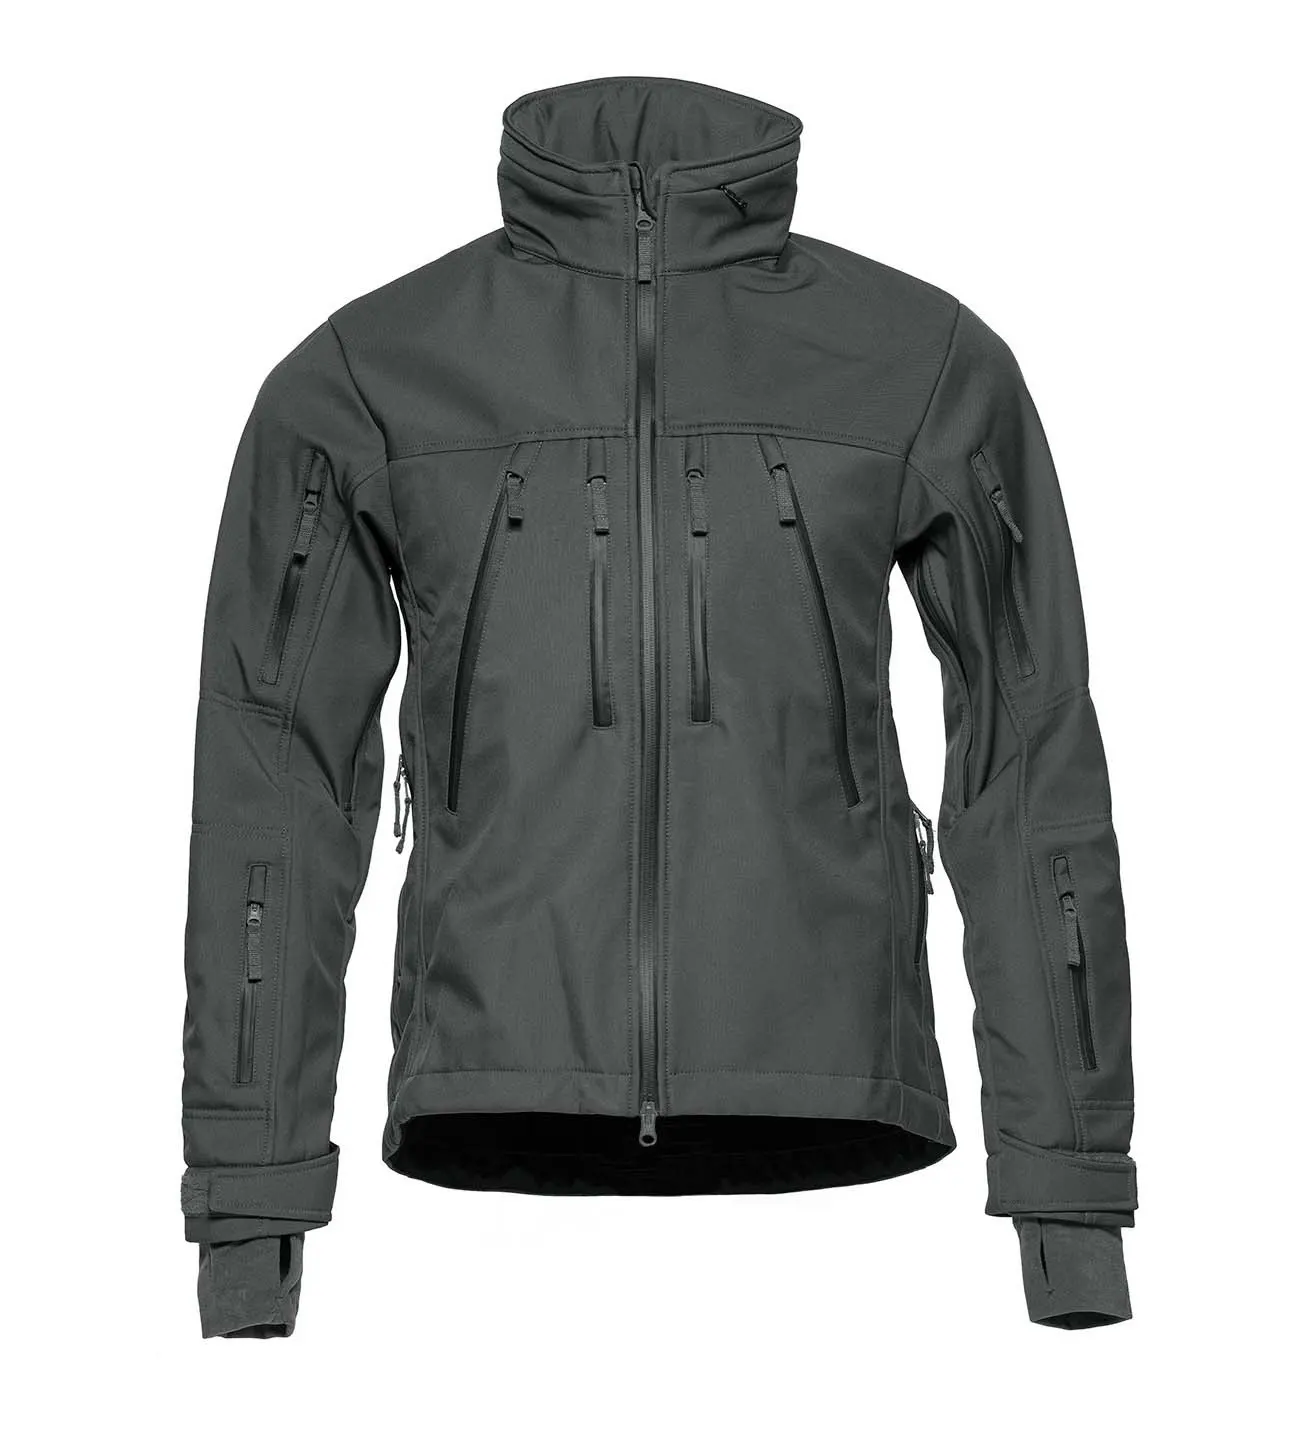 Giacca a vento personalizzata set corti pantaloncini giacca in Nylon giacca a vento giacca a vento da corsa da motociclista antipioggia giacca impermeabile